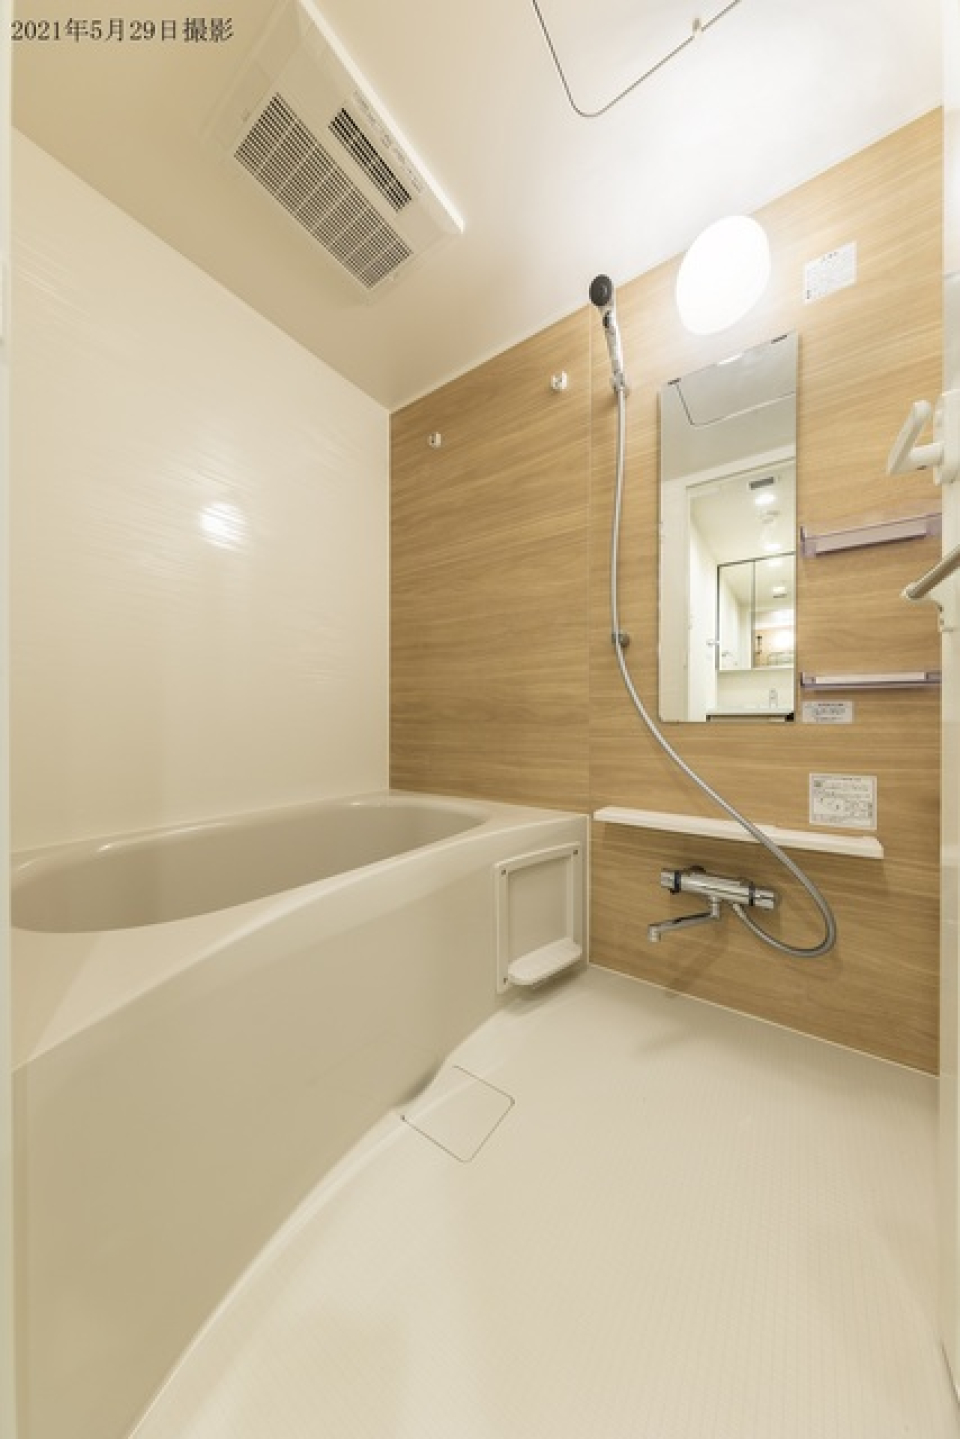 ナチュラルなパネルが使用されている浴室です。※写真は同タイプ住戸です。